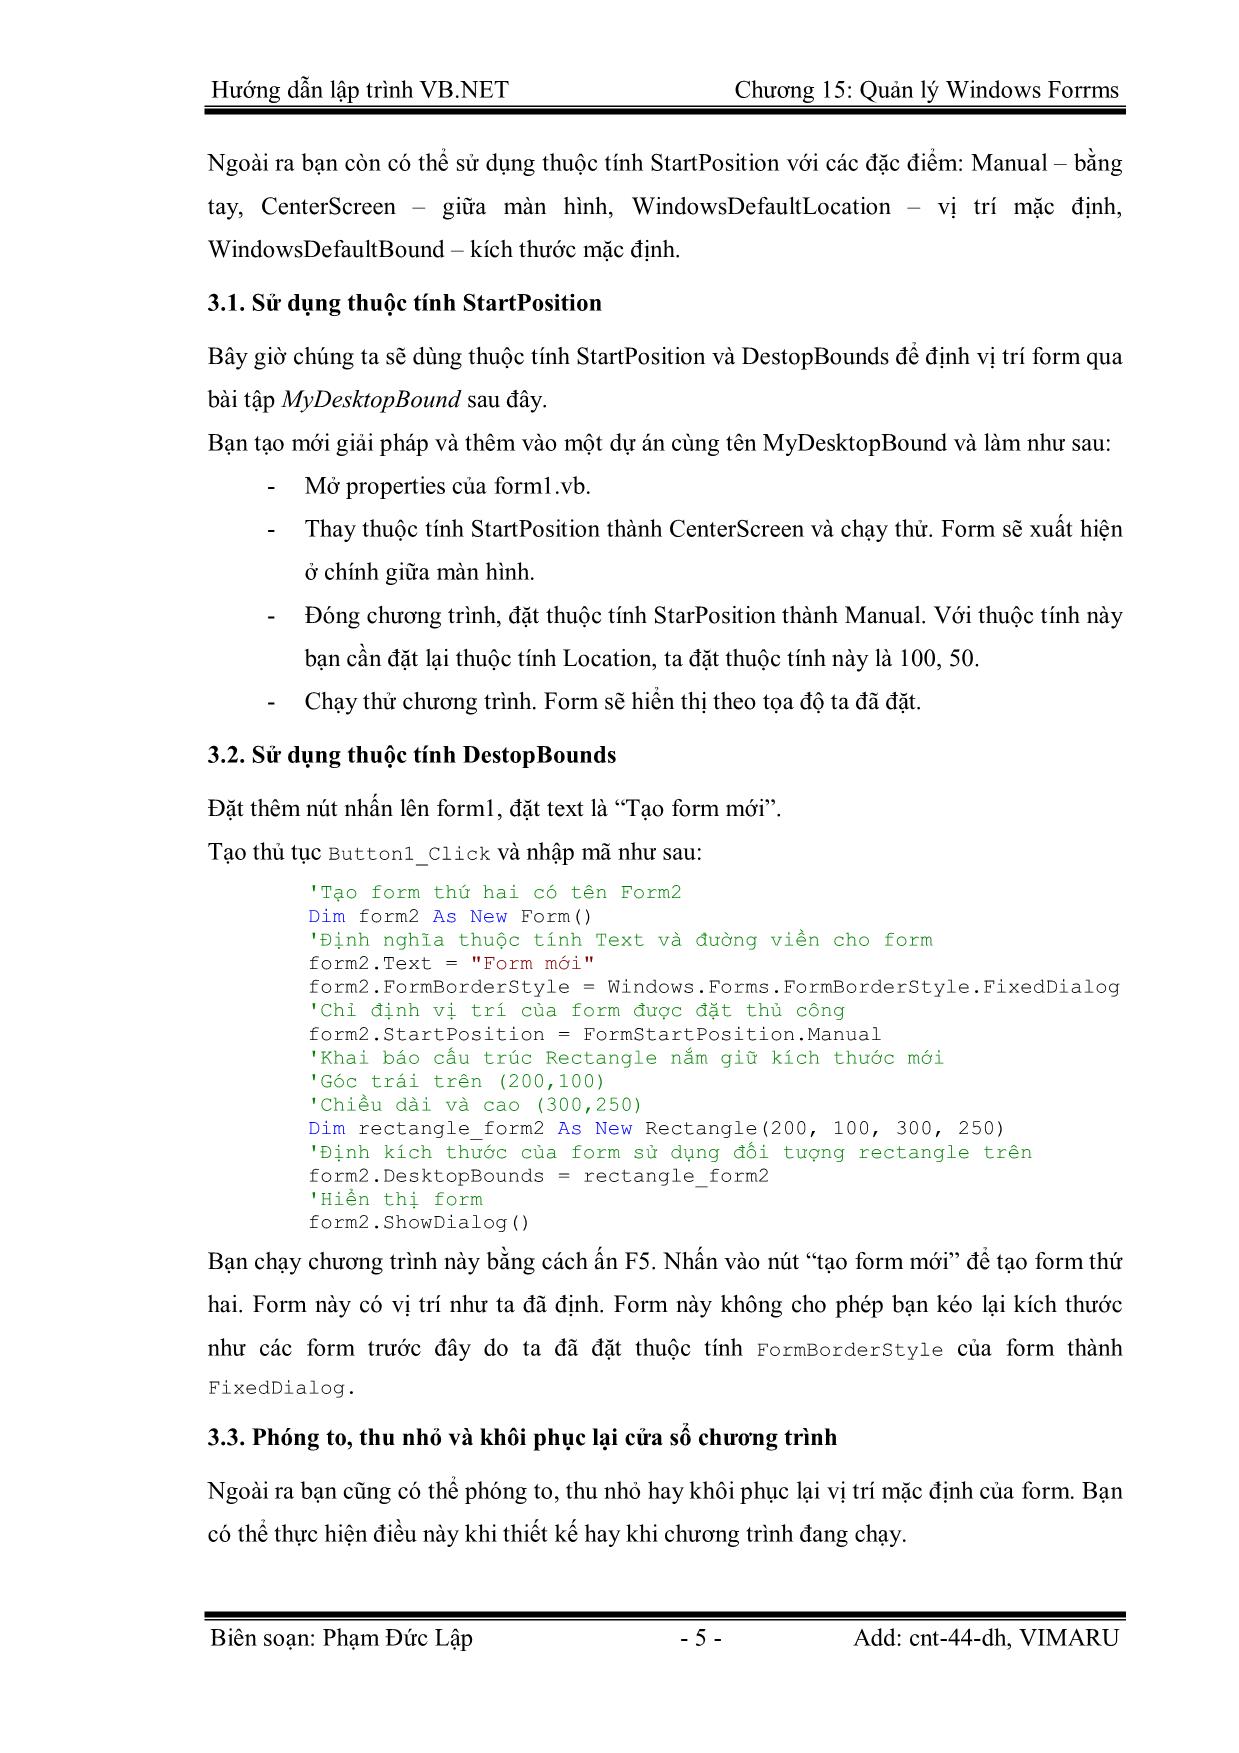 Giáo trình Hướng dẫn lập trình VB.NET - Chương 15: Quản lý Windows Forms - Phạm Đức Lập trang 5